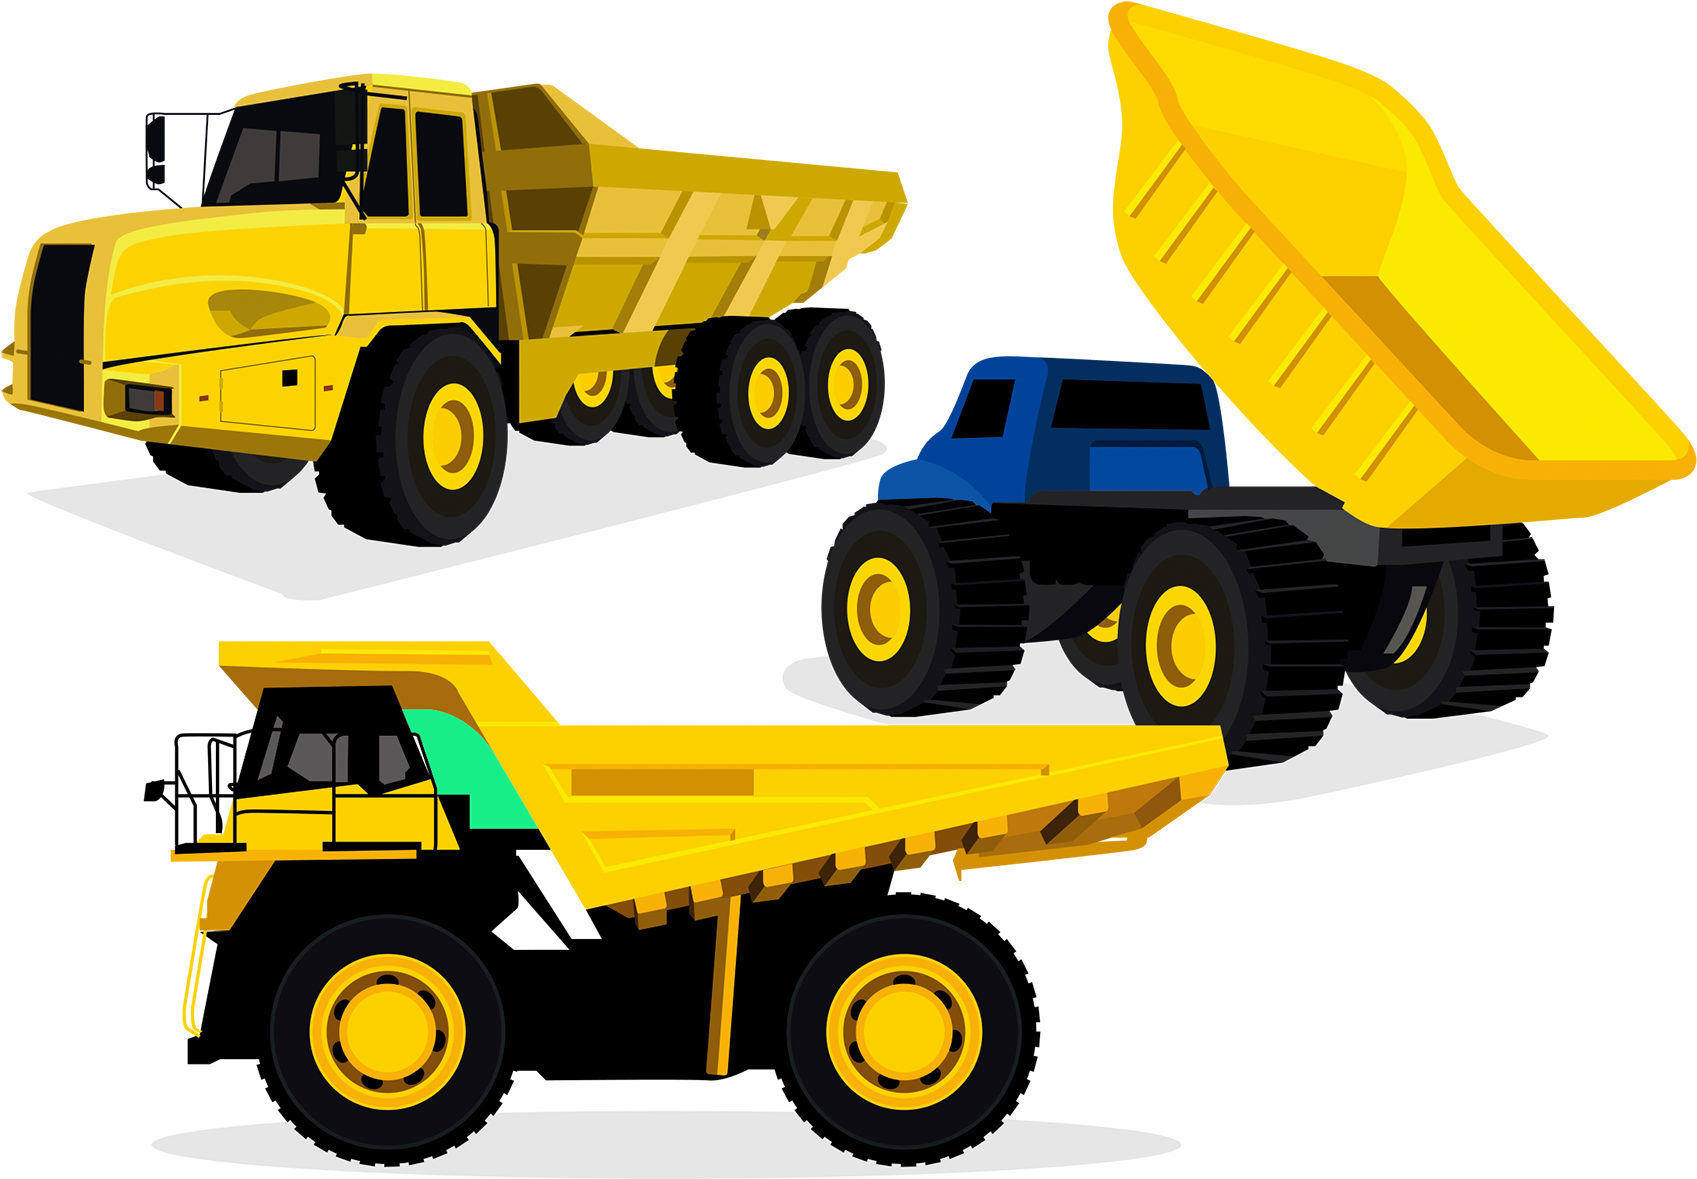 Download and share clipart about Dump Truck Euclidean Vector - Dump Truck E...